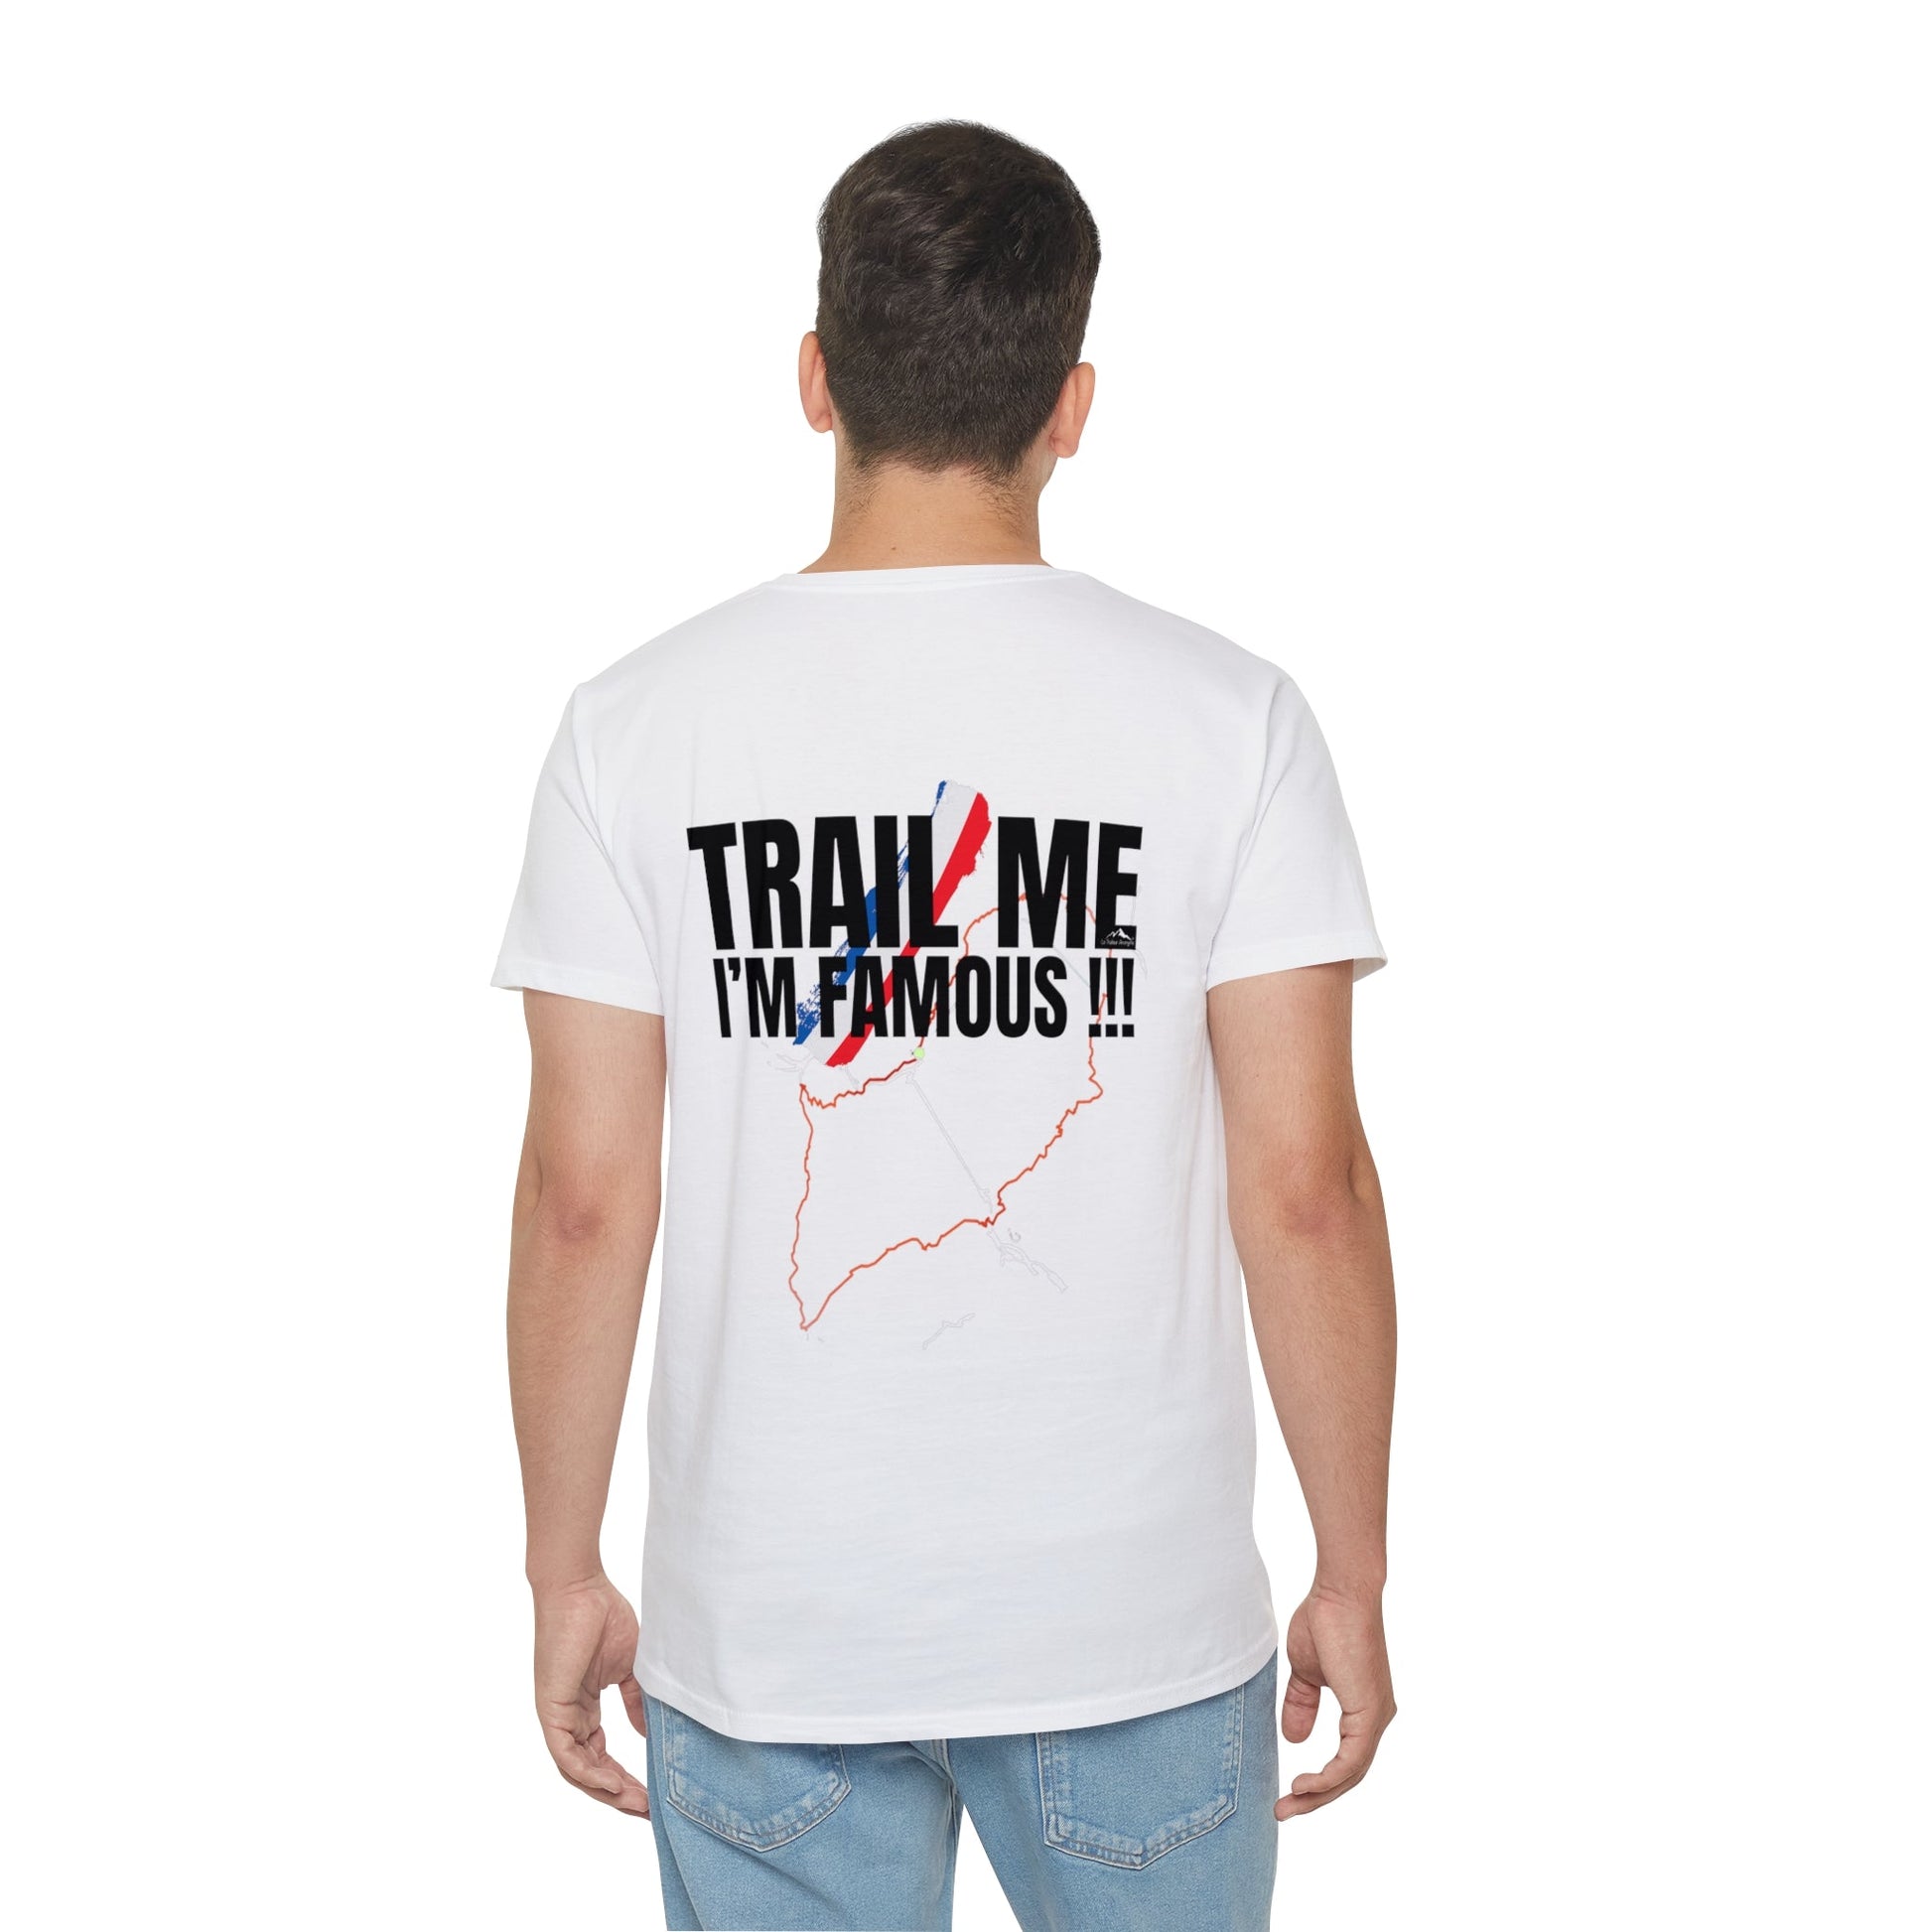 T-Shirt Coton - Unisexe - Collection "Trail Me, I'm famous !!!" (1750) - Le Traileur Anonyme